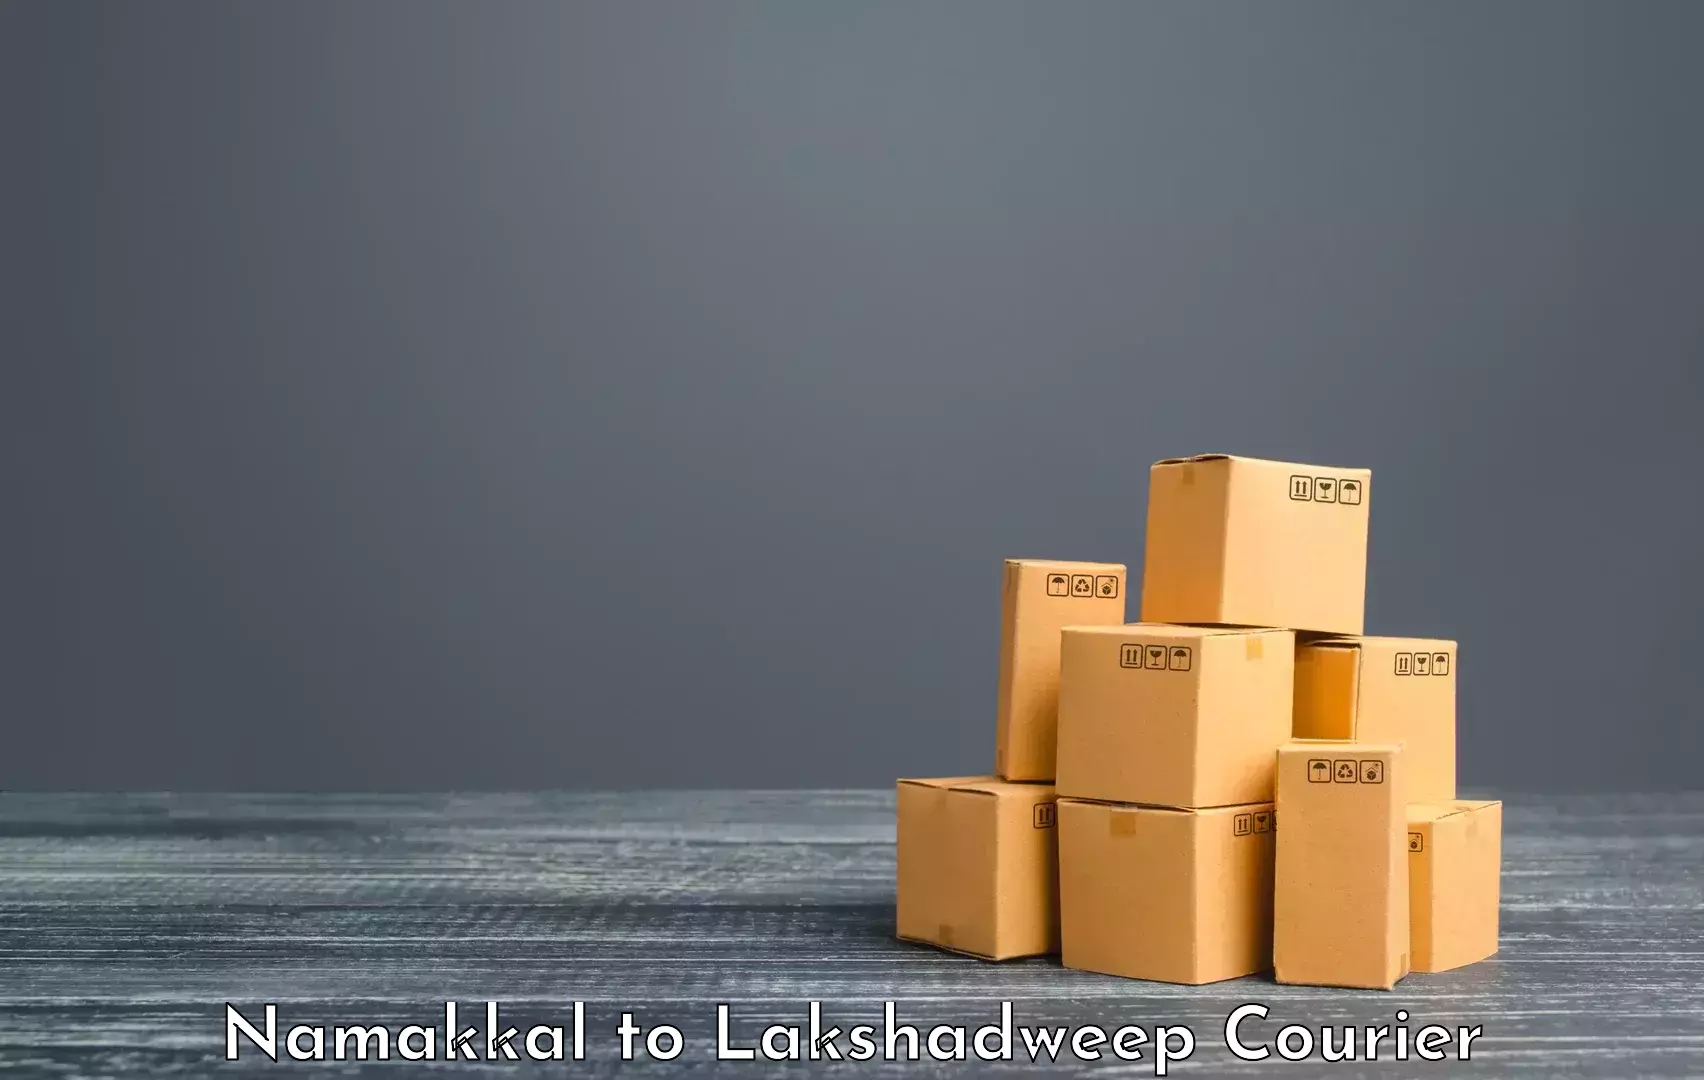 Luggage shipping service Namakkal to Lakshadweep